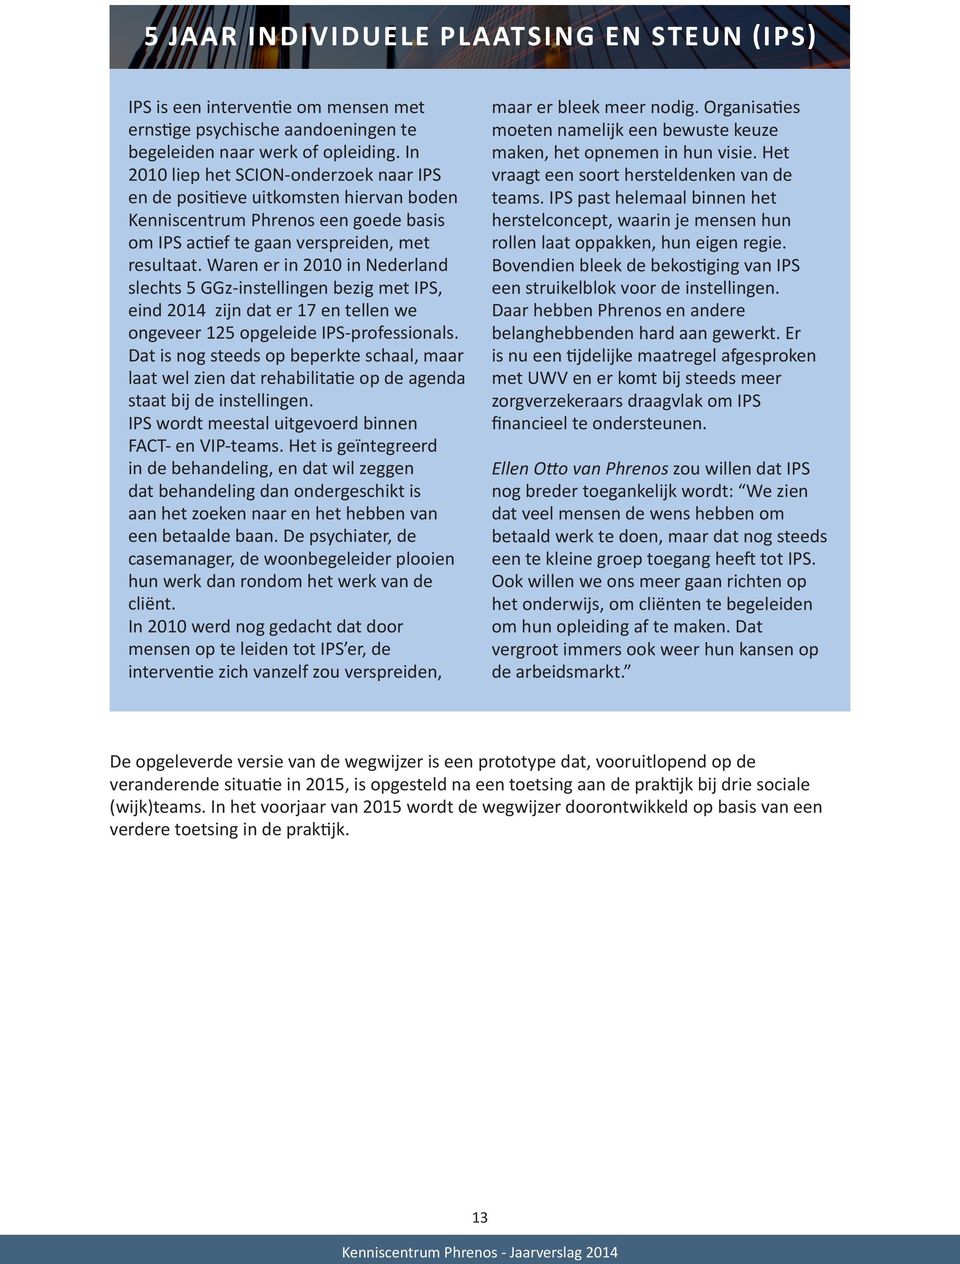 Waren er in 2010 in Nederland slechts 5 GGz-instellingen bezig met IPS, eind 2014 zijn dat er 17 en tellen we ongeveer 125 opgeleide IPS-professionals.